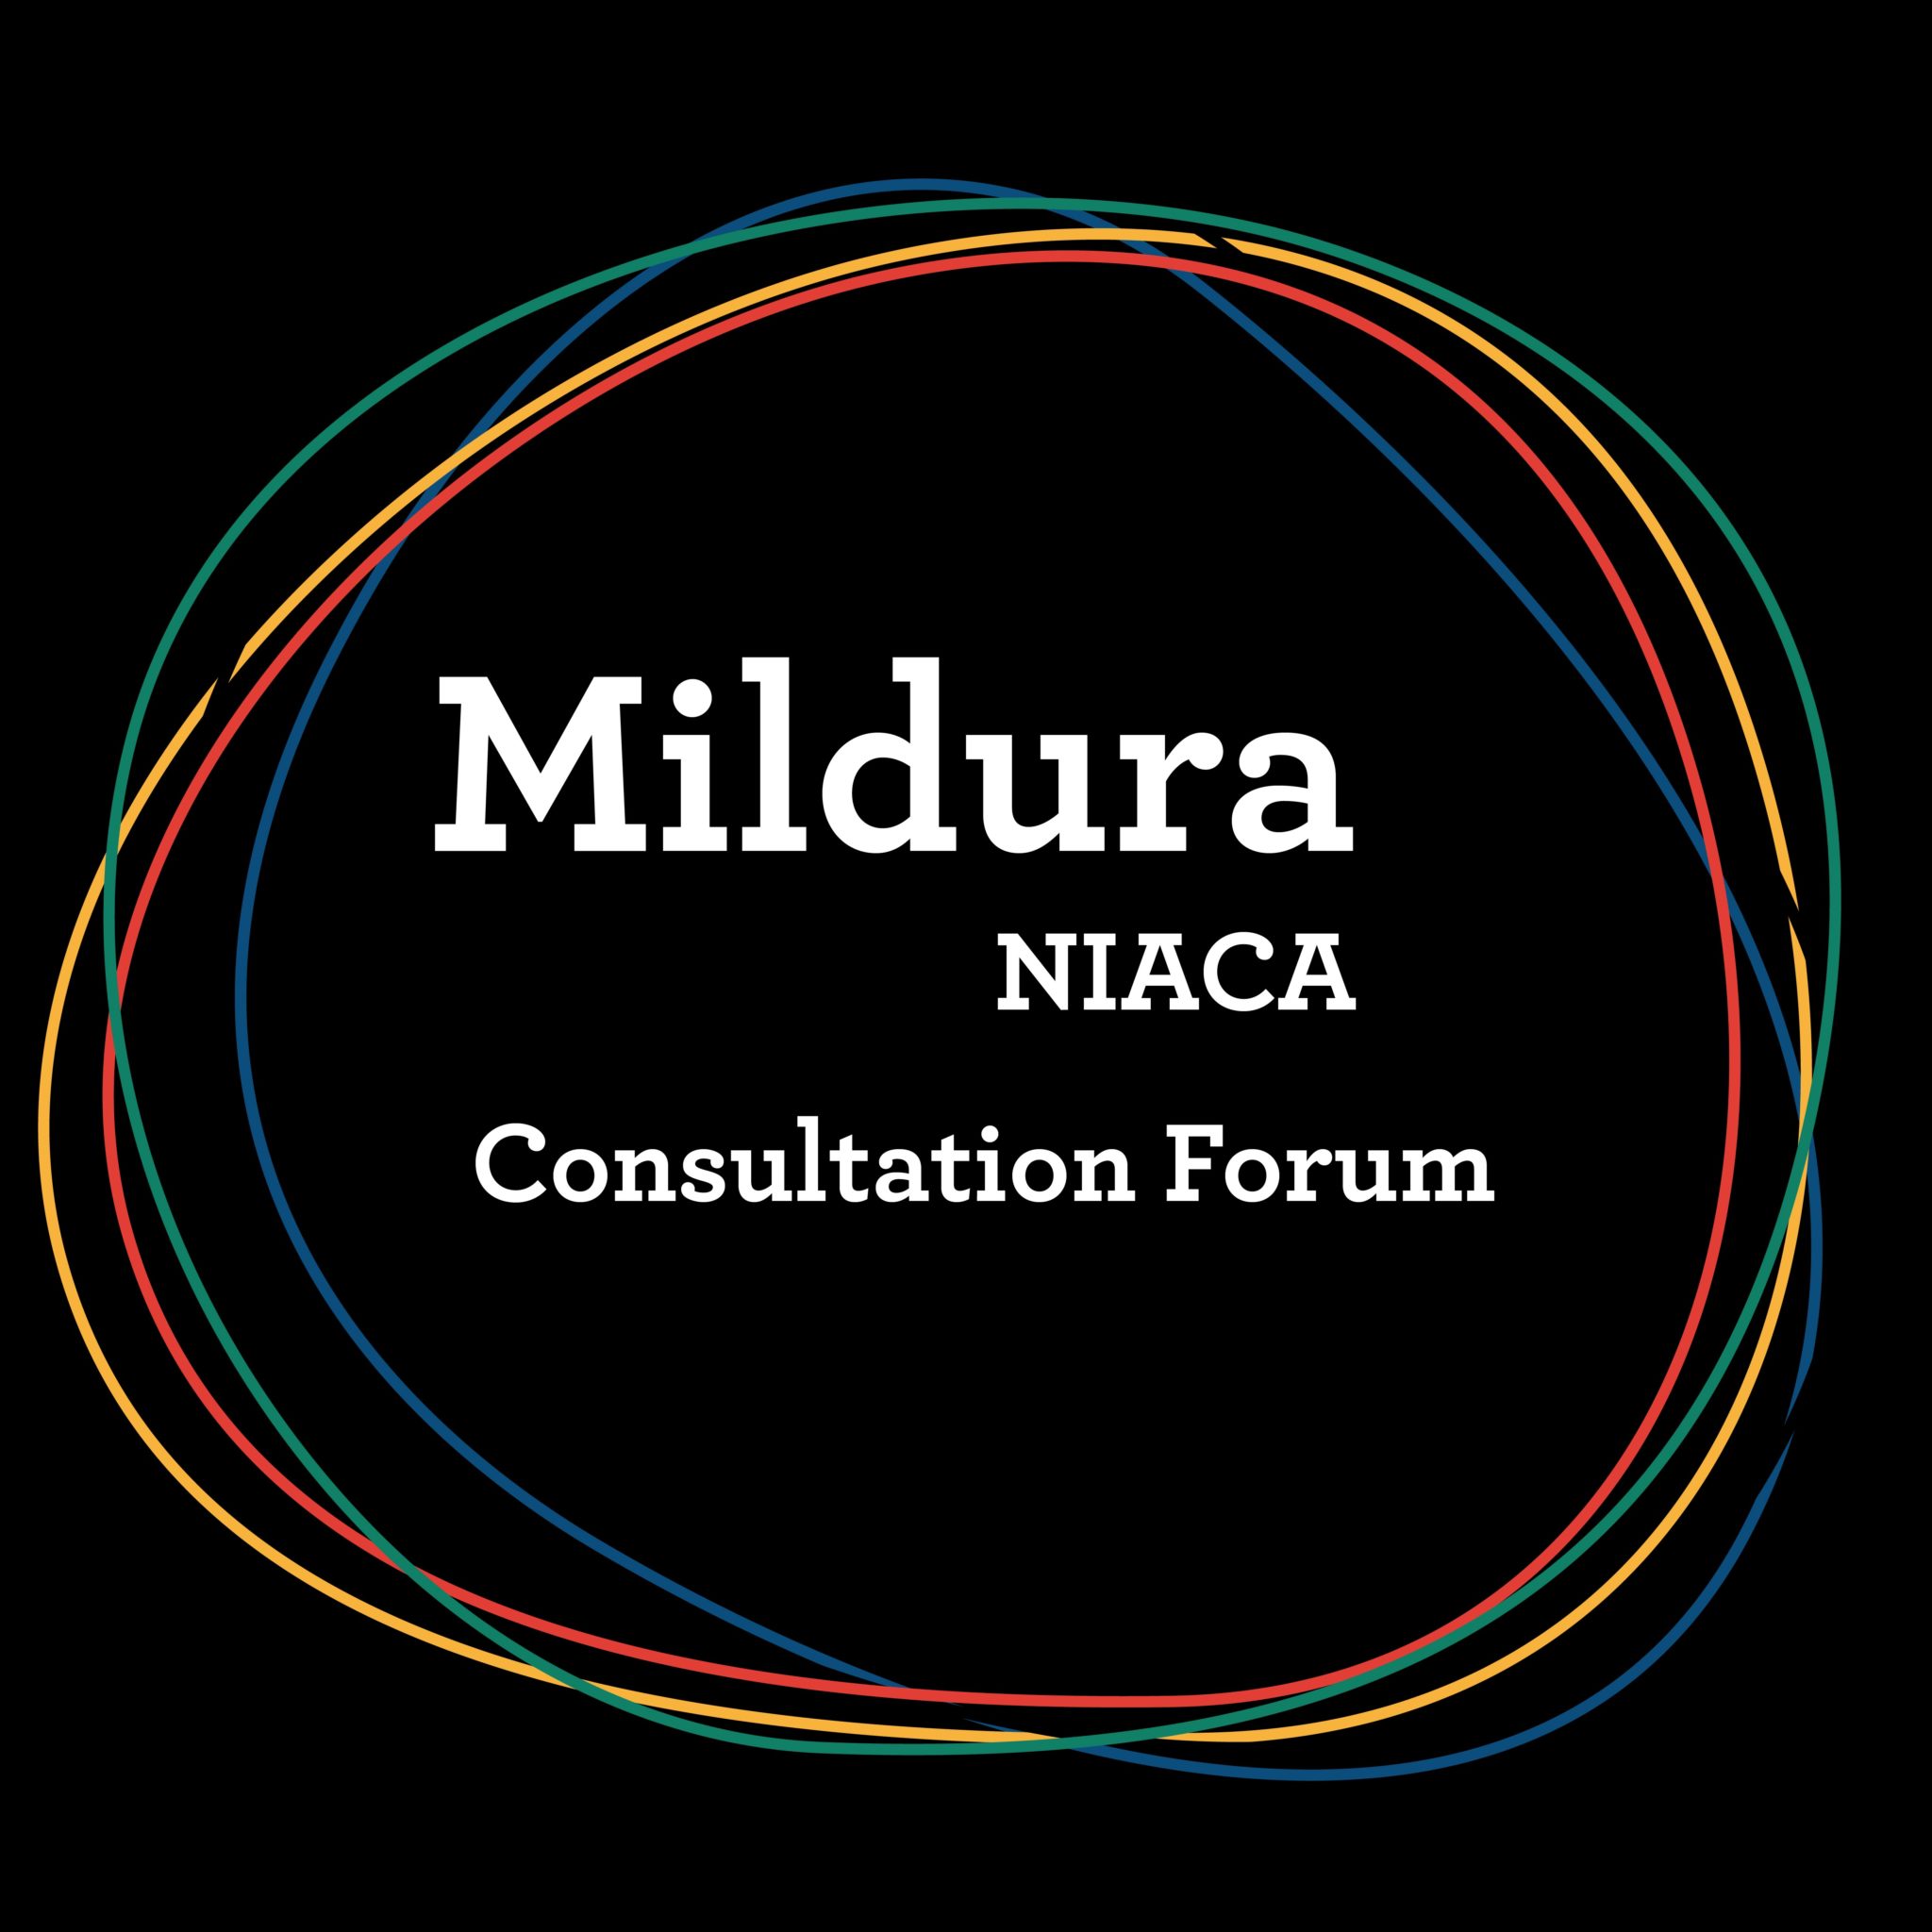 Mildura NIACA Consultation Forum